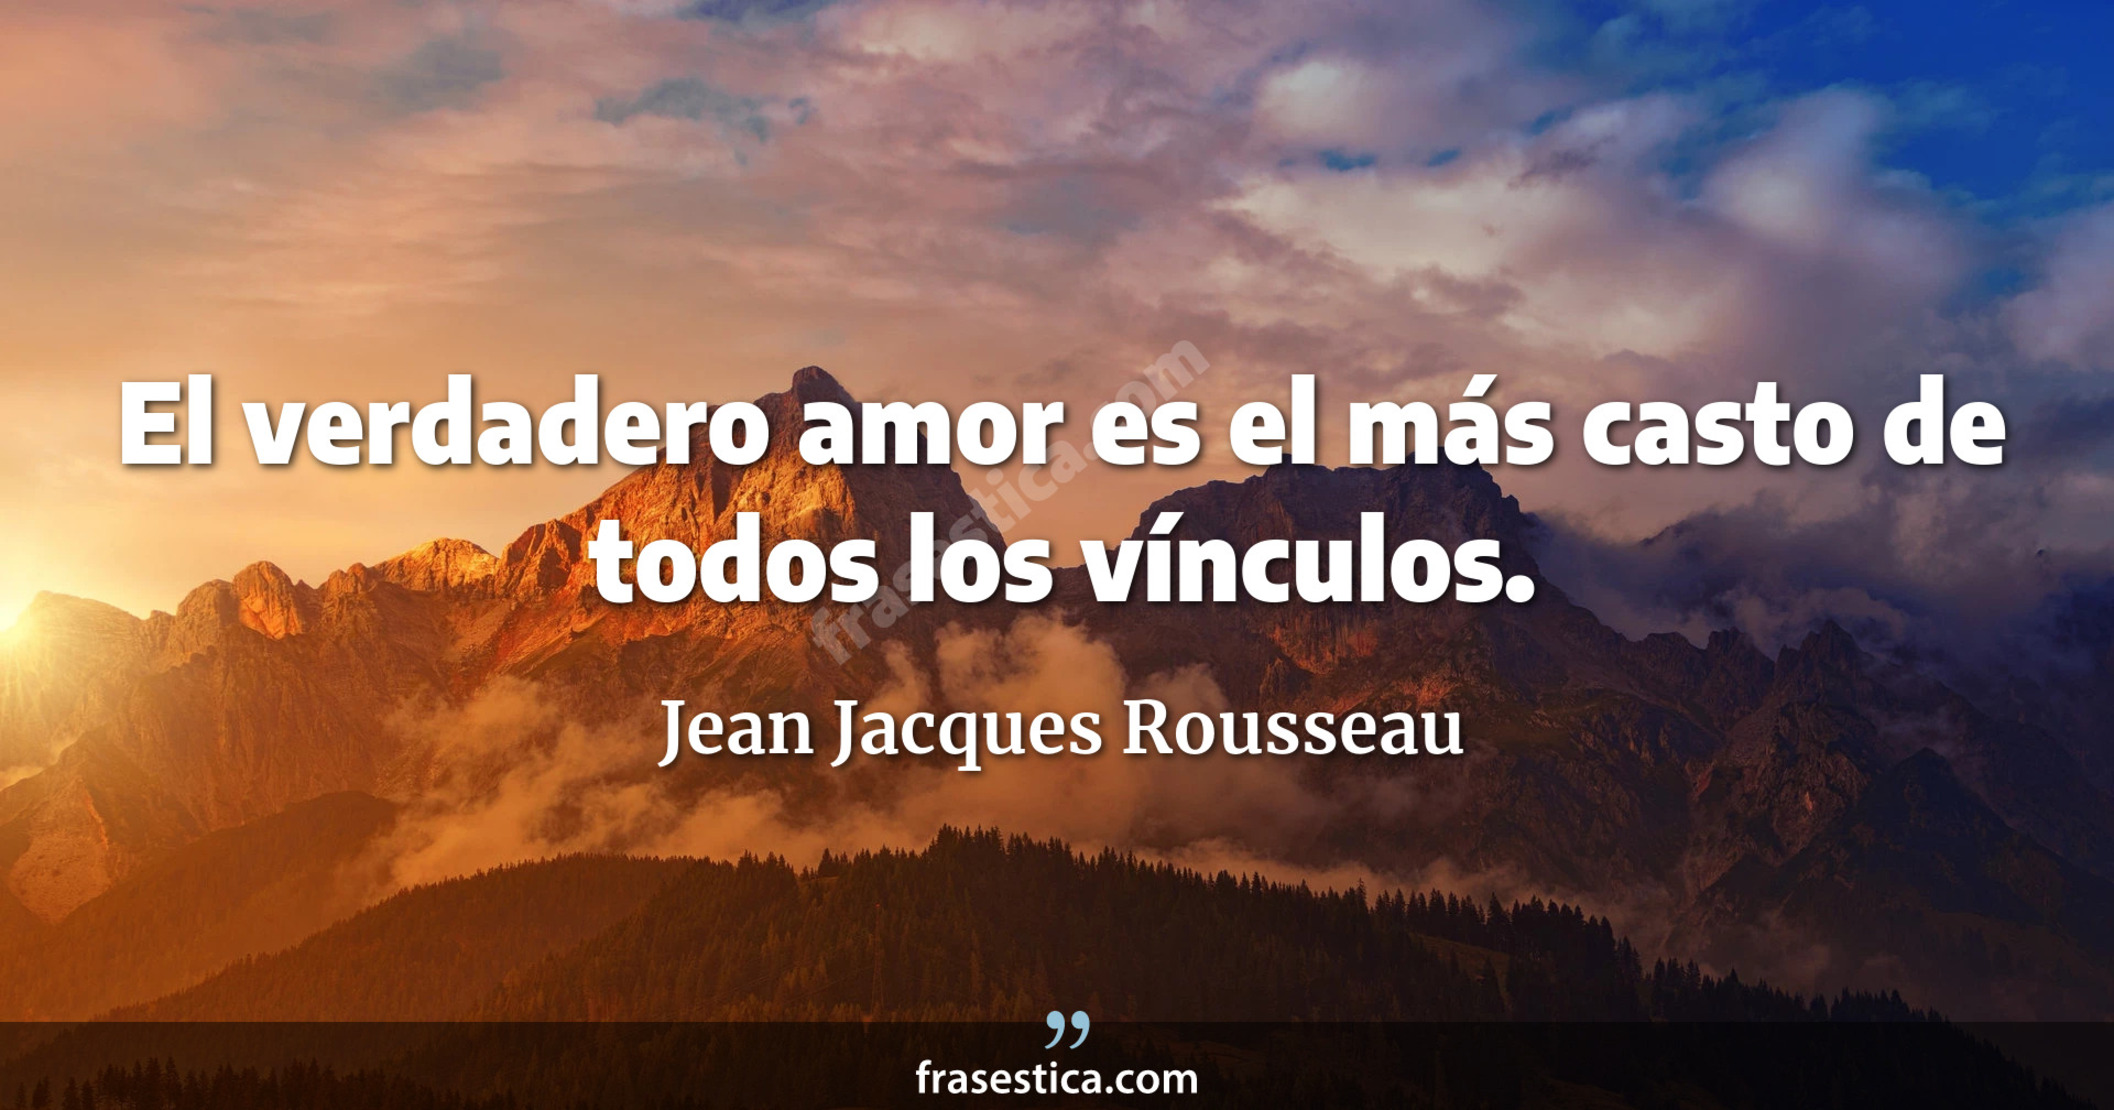 El verdadero amor es el más casto de todos los vínculos. - Jean Jacques Rousseau